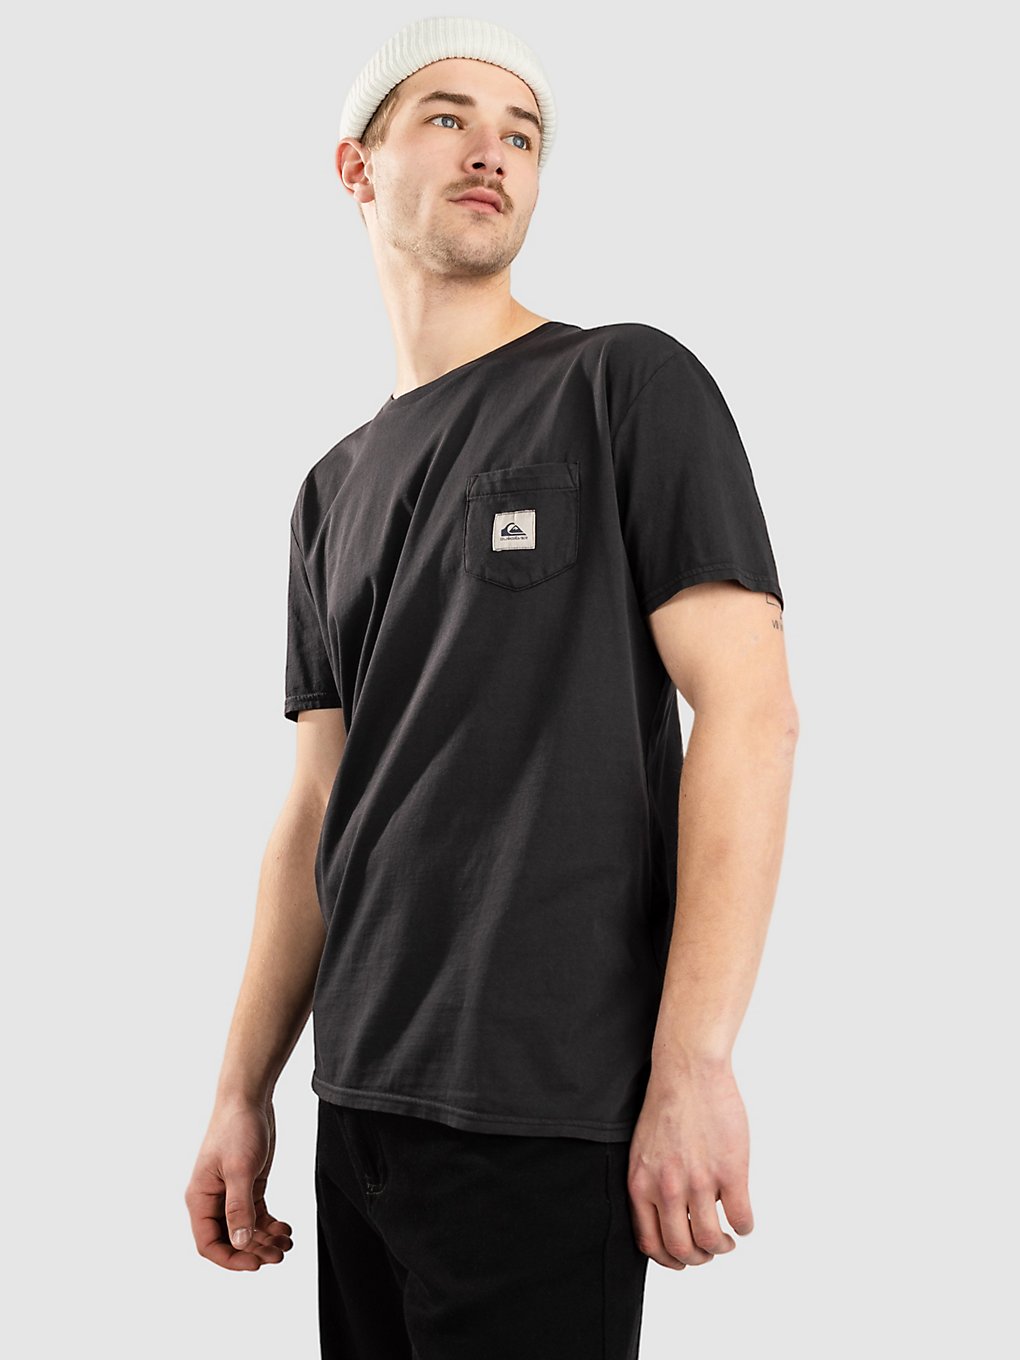 Quiksilver Sub Mission T-Shirt black kaufen